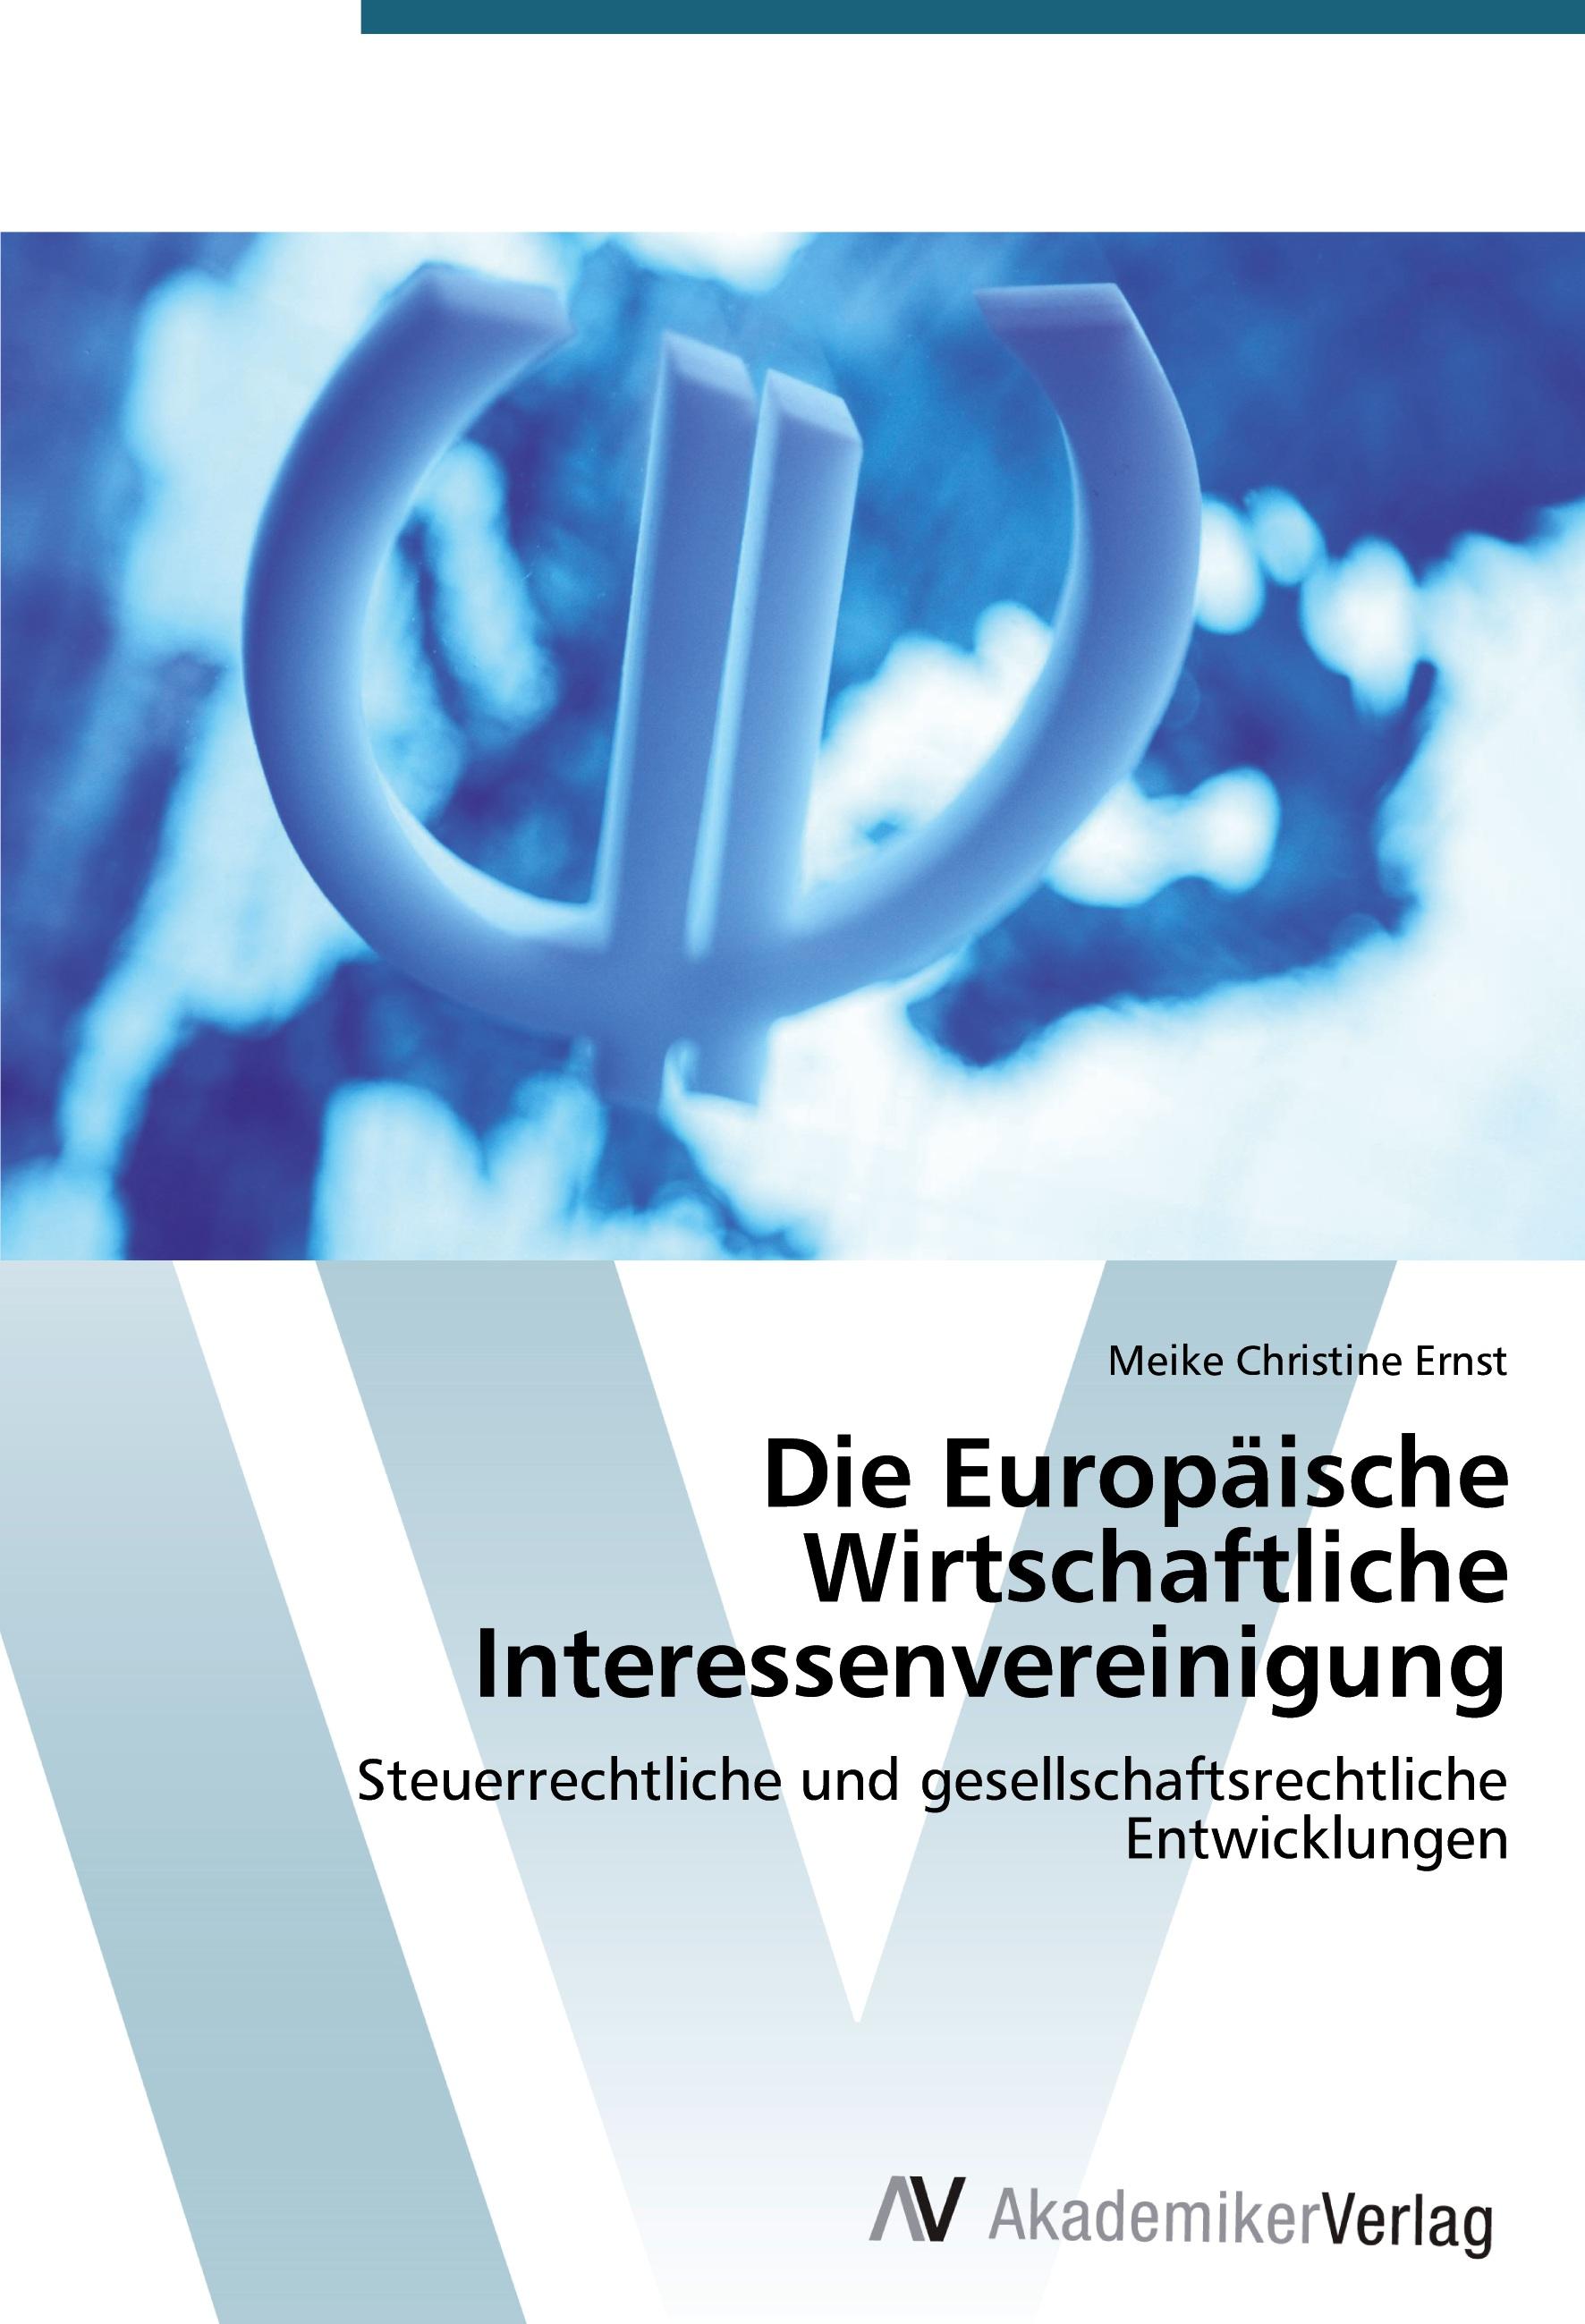 Die Europaeische Wirtschaftliche Interessenvereinigung - Meike Christine Ernst